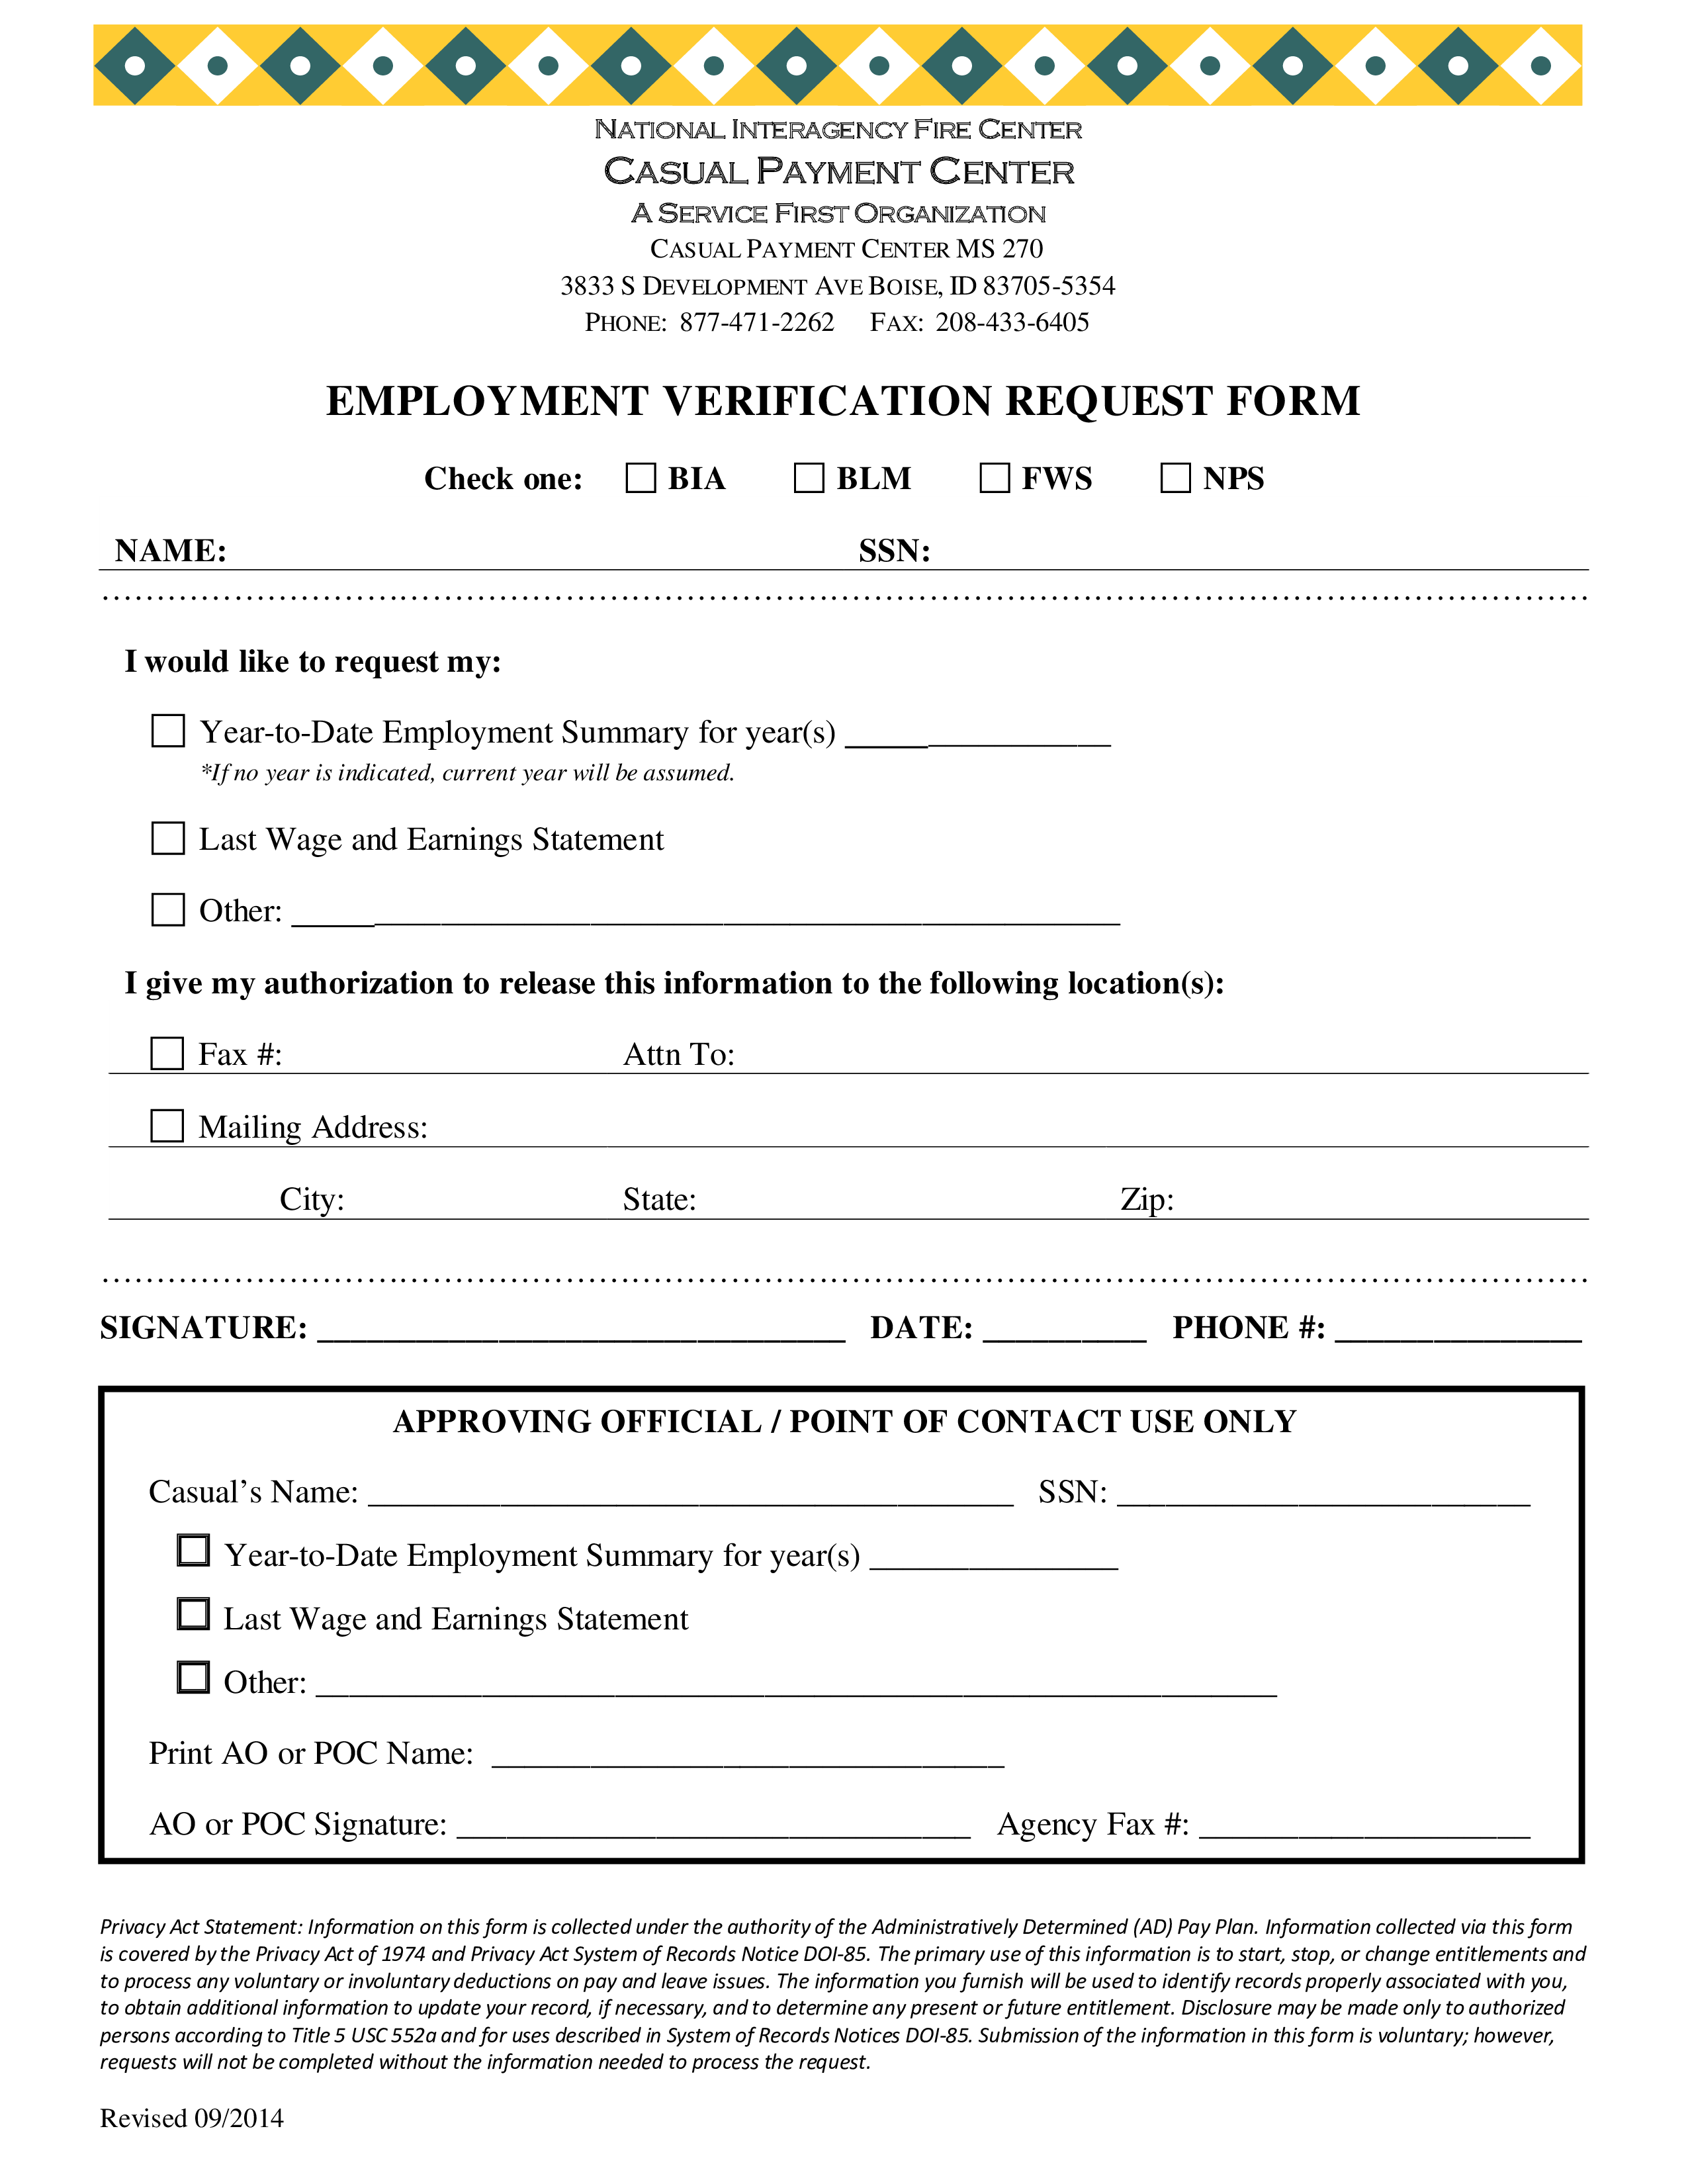 employment verification request form template